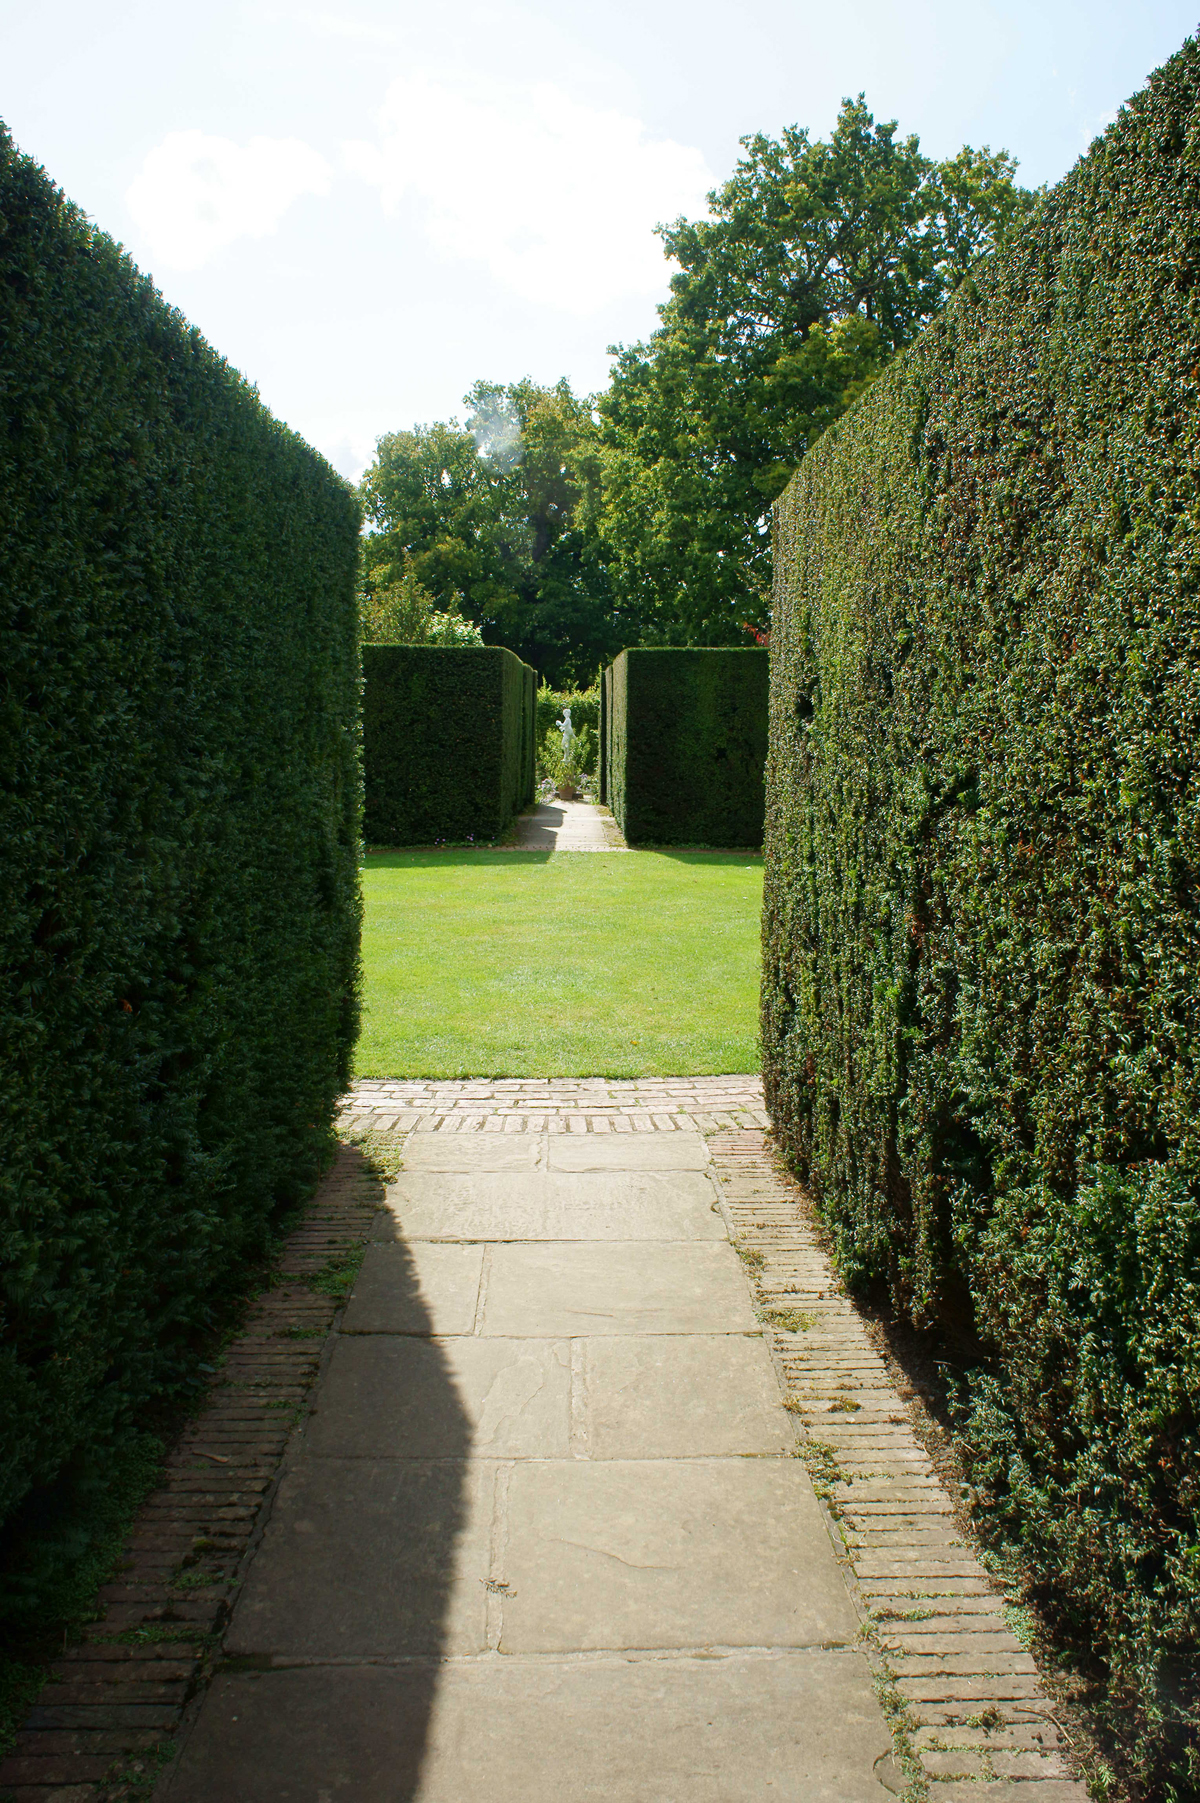  Sissinghurst-Castle-Garden